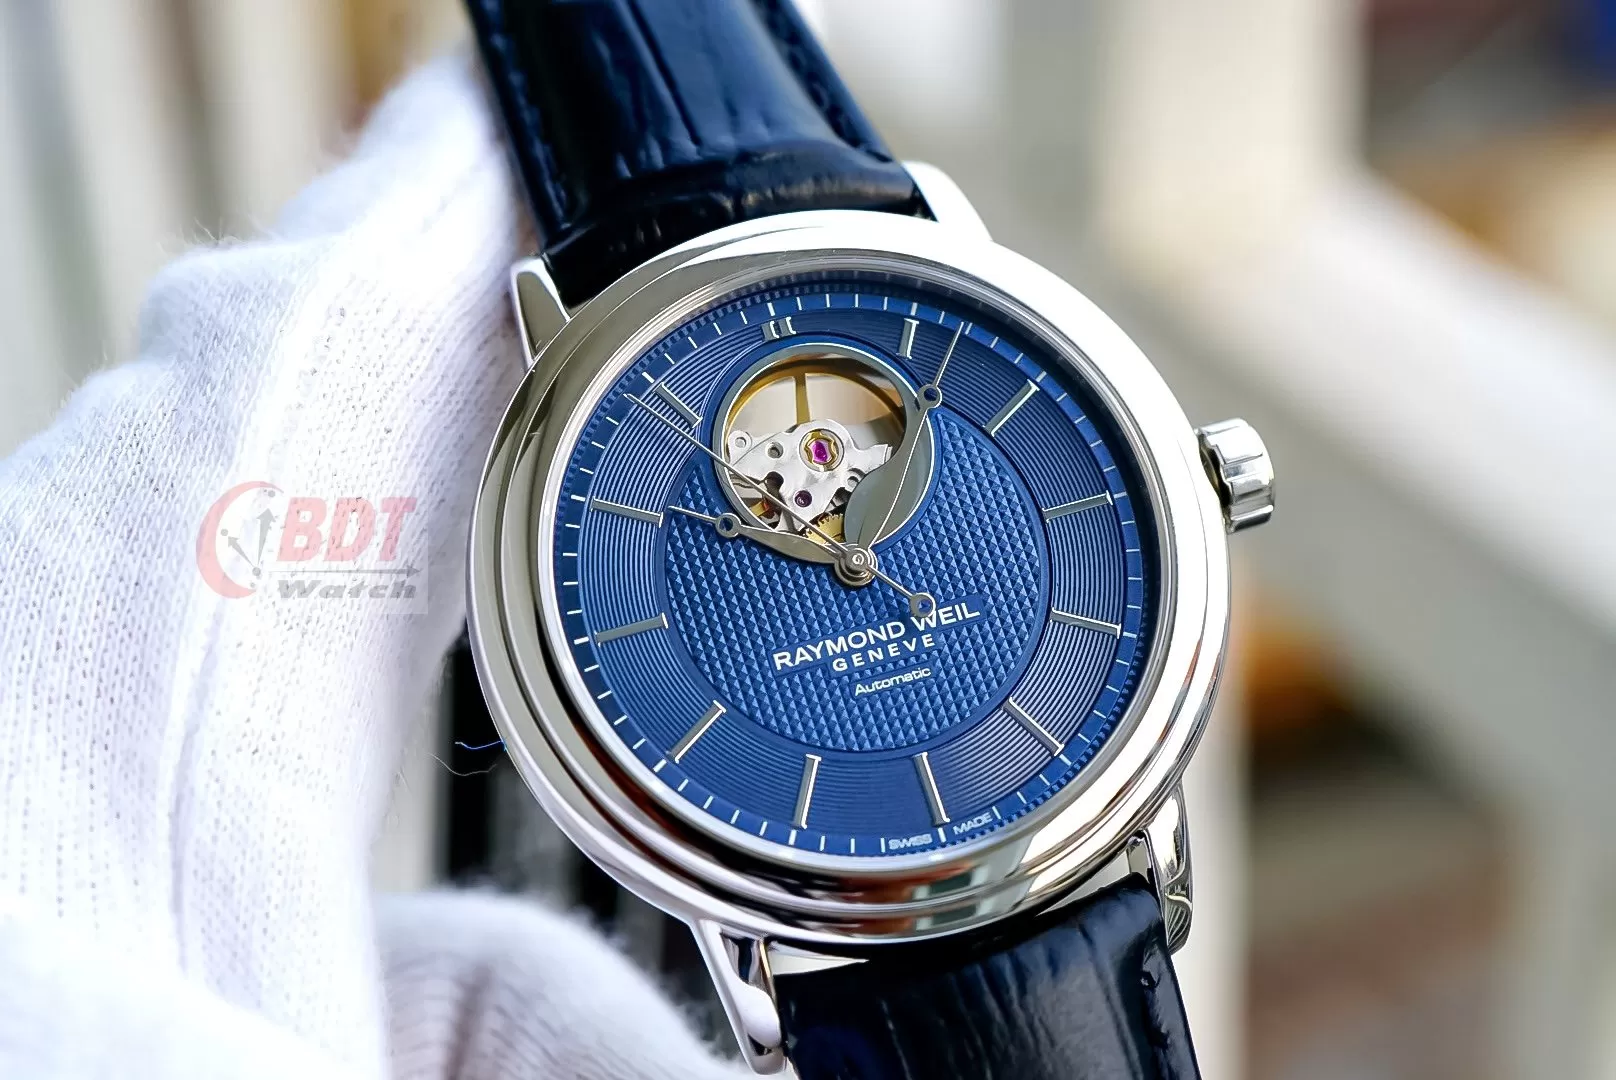 Top những mẫu đồng hồ Raymond Weil chính hãng thụy sỹ giá tốt nhất, đẹp , sang trọng và đẳng cấp nhất hiện nay.